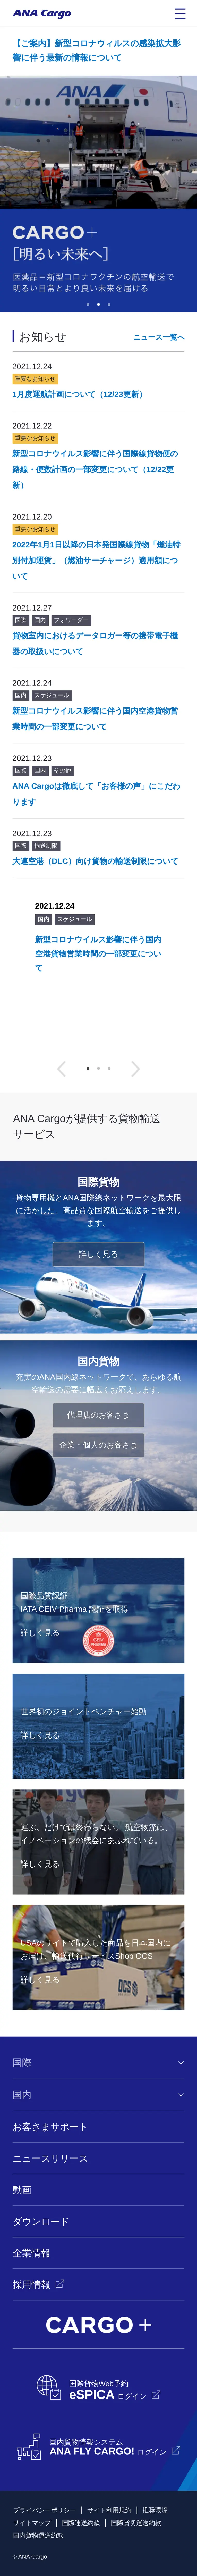 キャプチャ画面 会社名:株式会社ANA Cargoプロジェクト名:ANA Cargo 画面名:A デバイス名:SPカテゴリ:航空・空港・陸運・海運タグ:A,SP